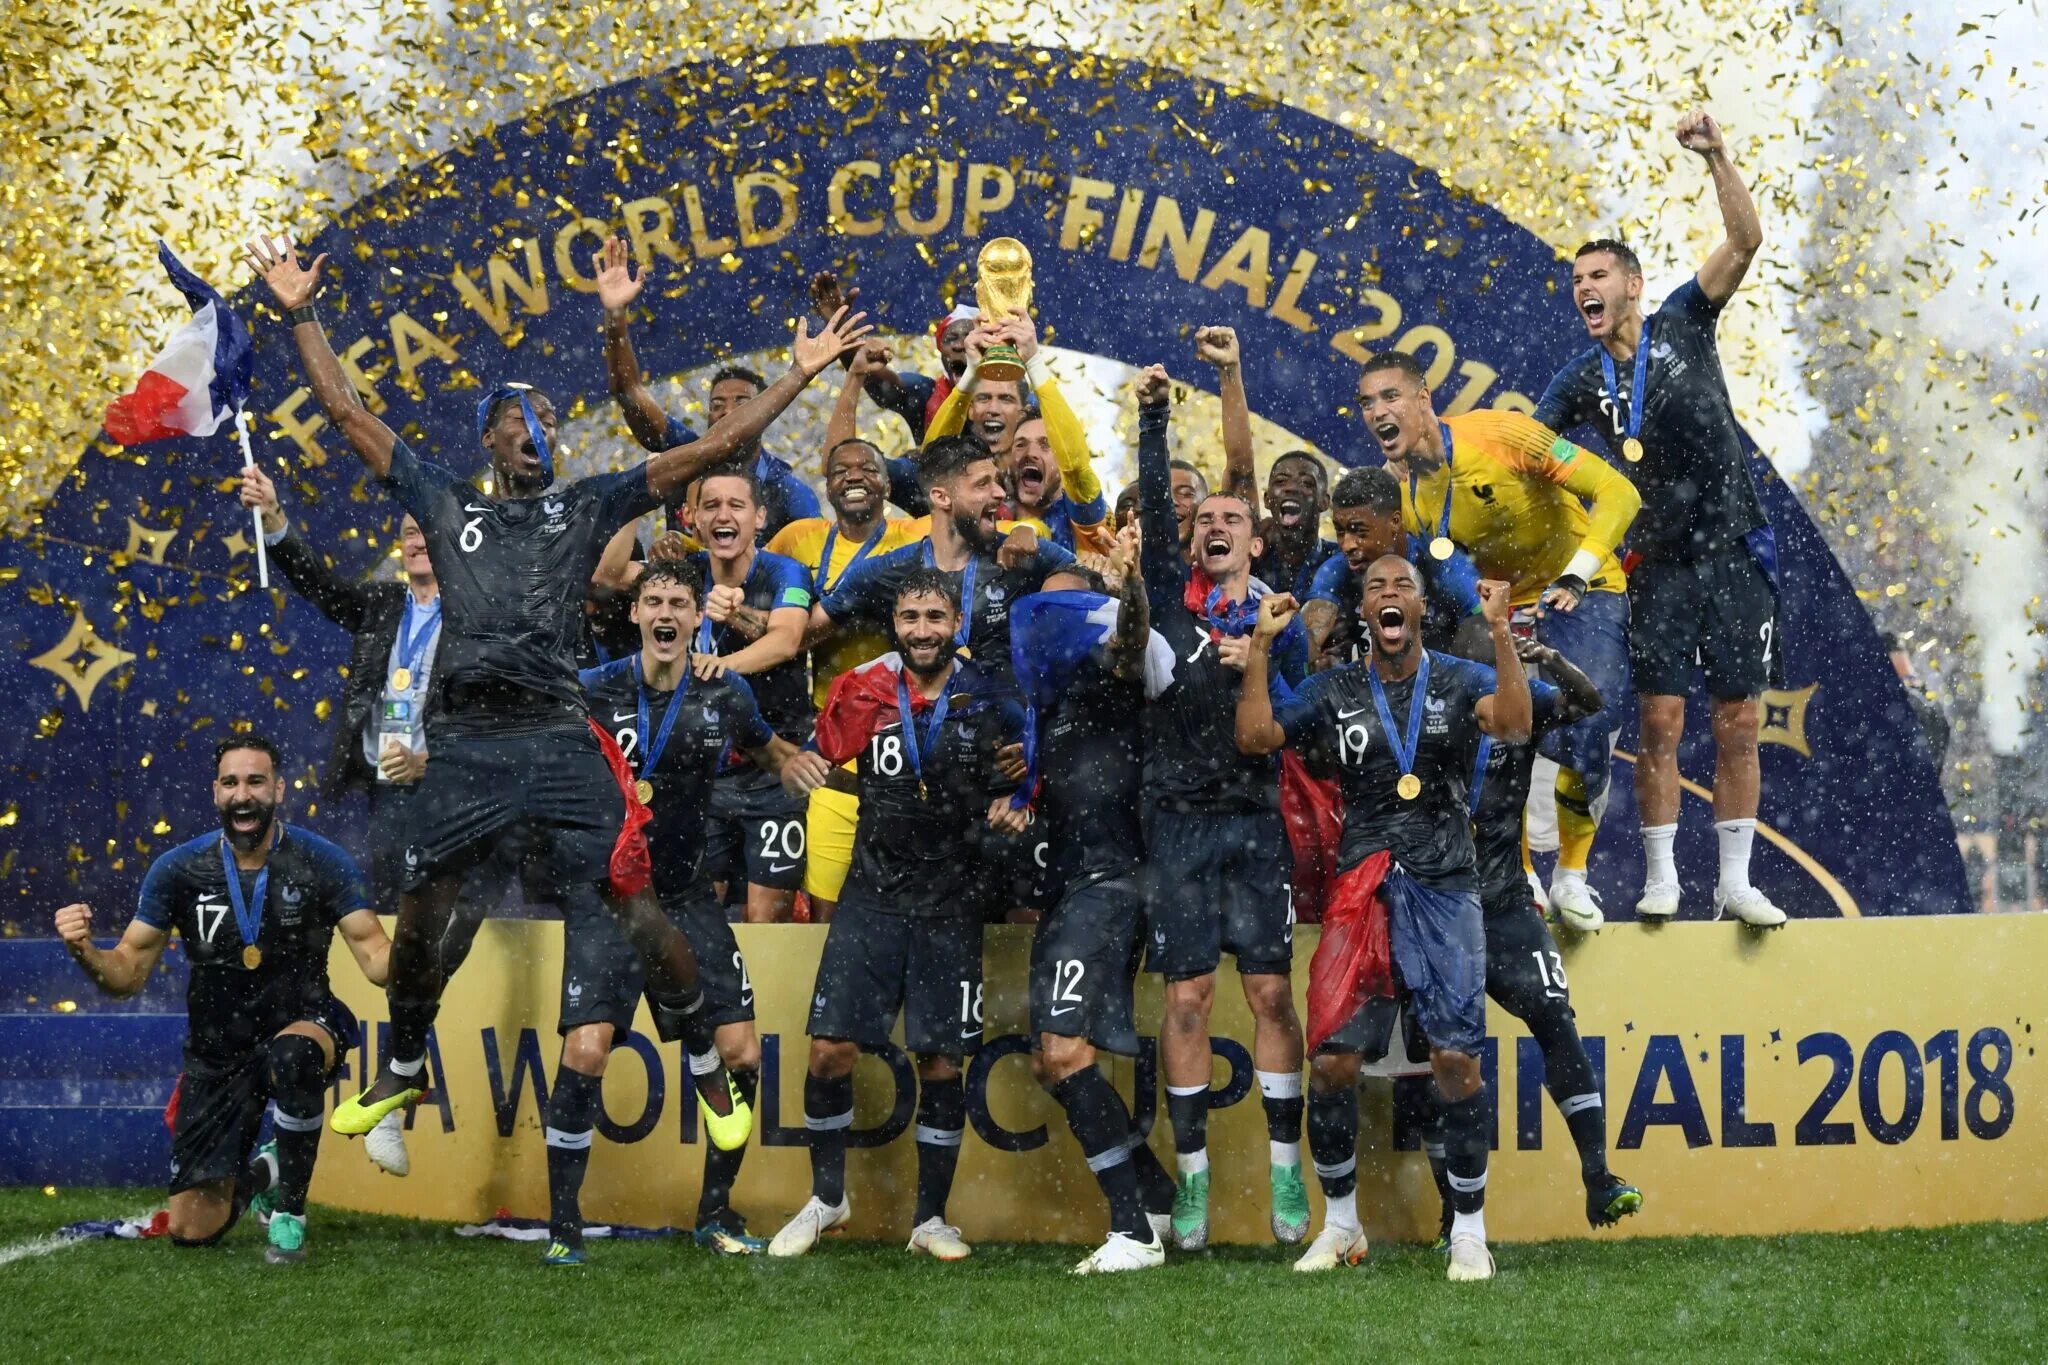 World cup 2. Чемпионская сборная Франции 2018.